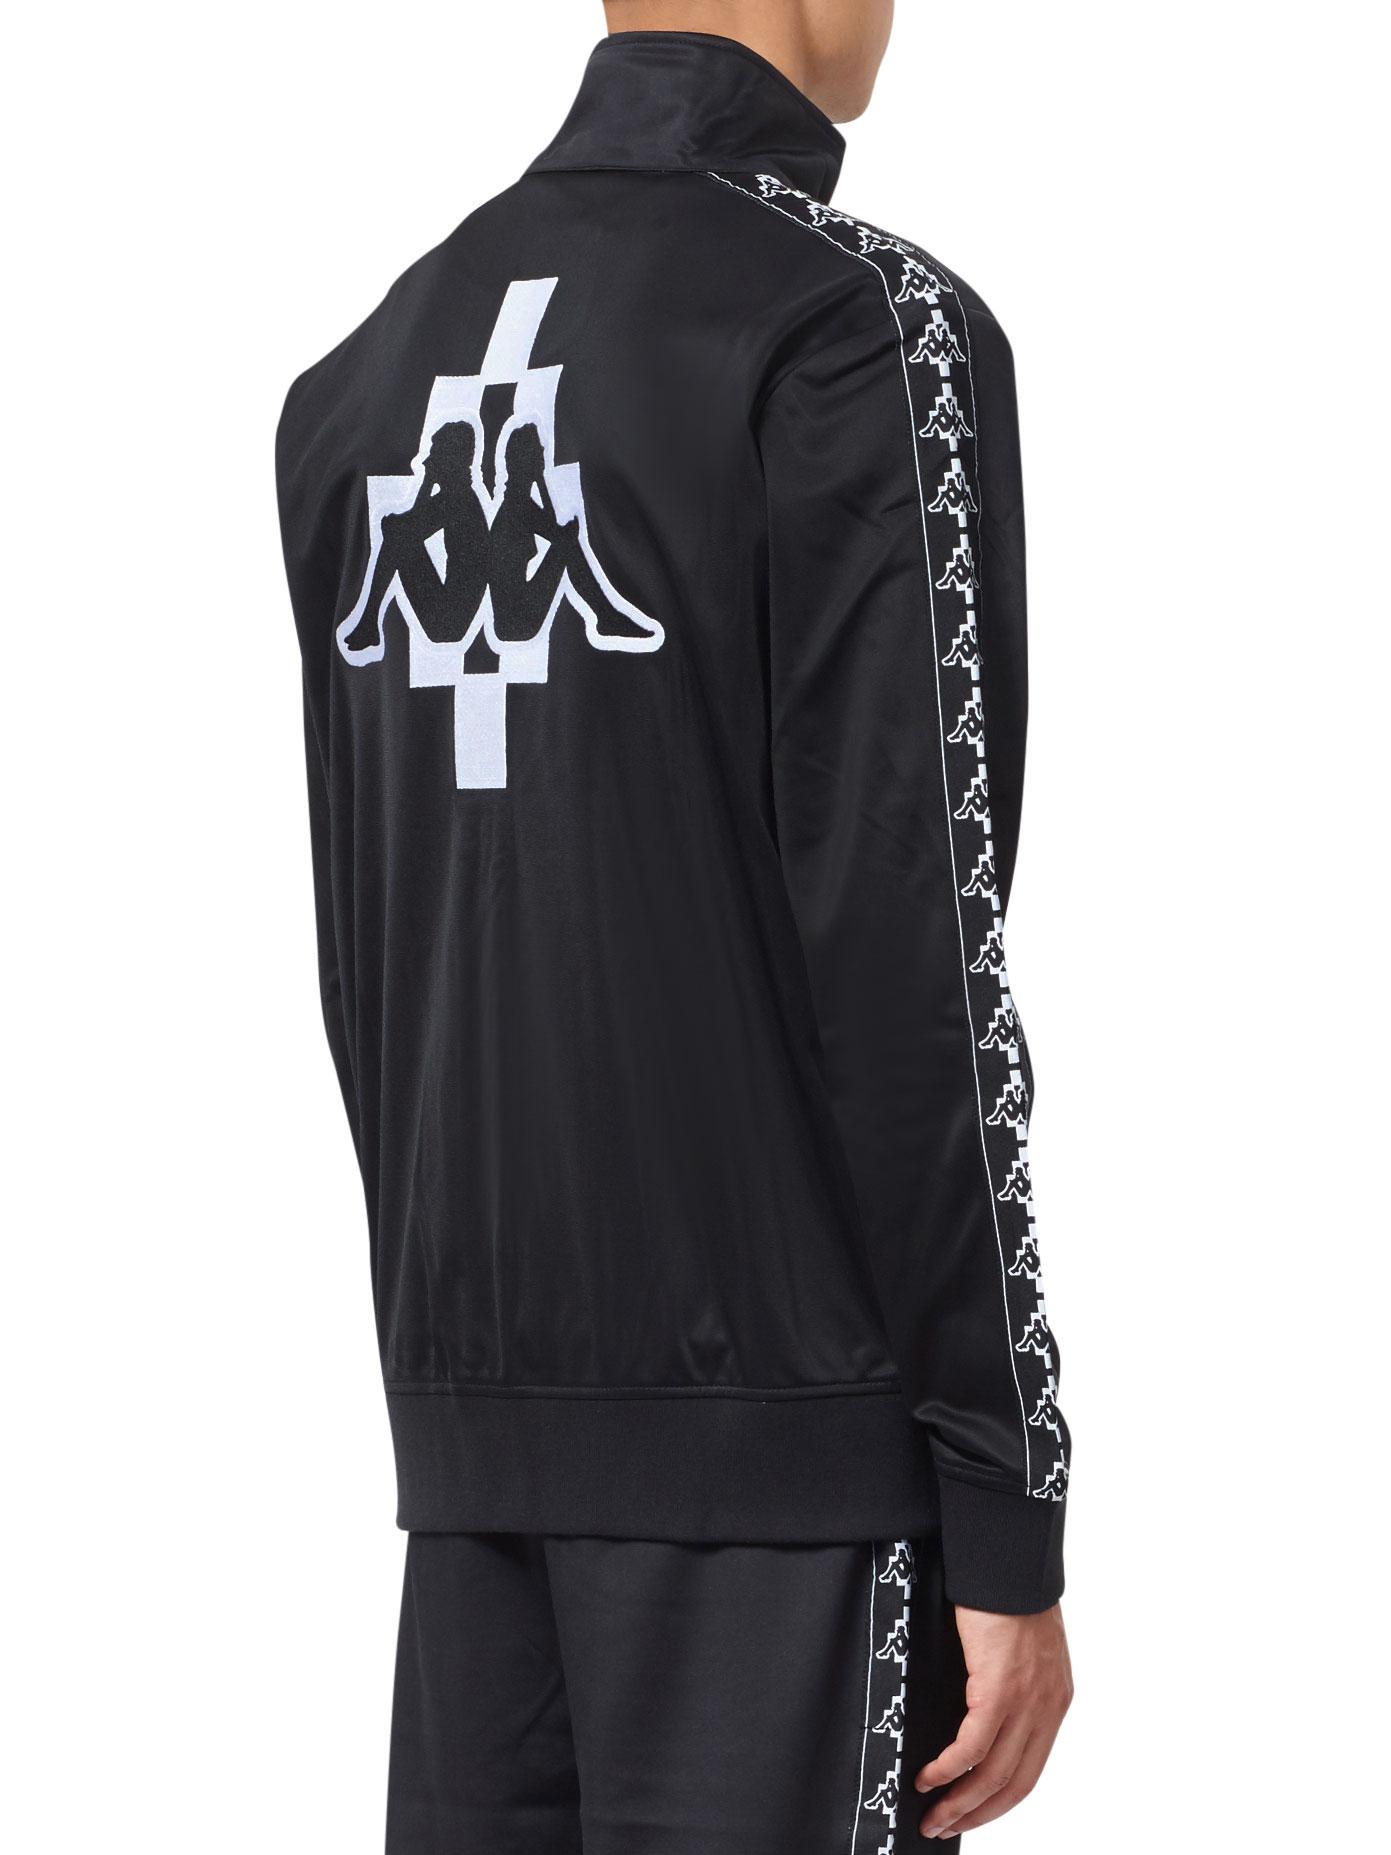 Marcelo Burlon Synthetic Kappa Tracksuit Jacket in Black for Men - Lyst